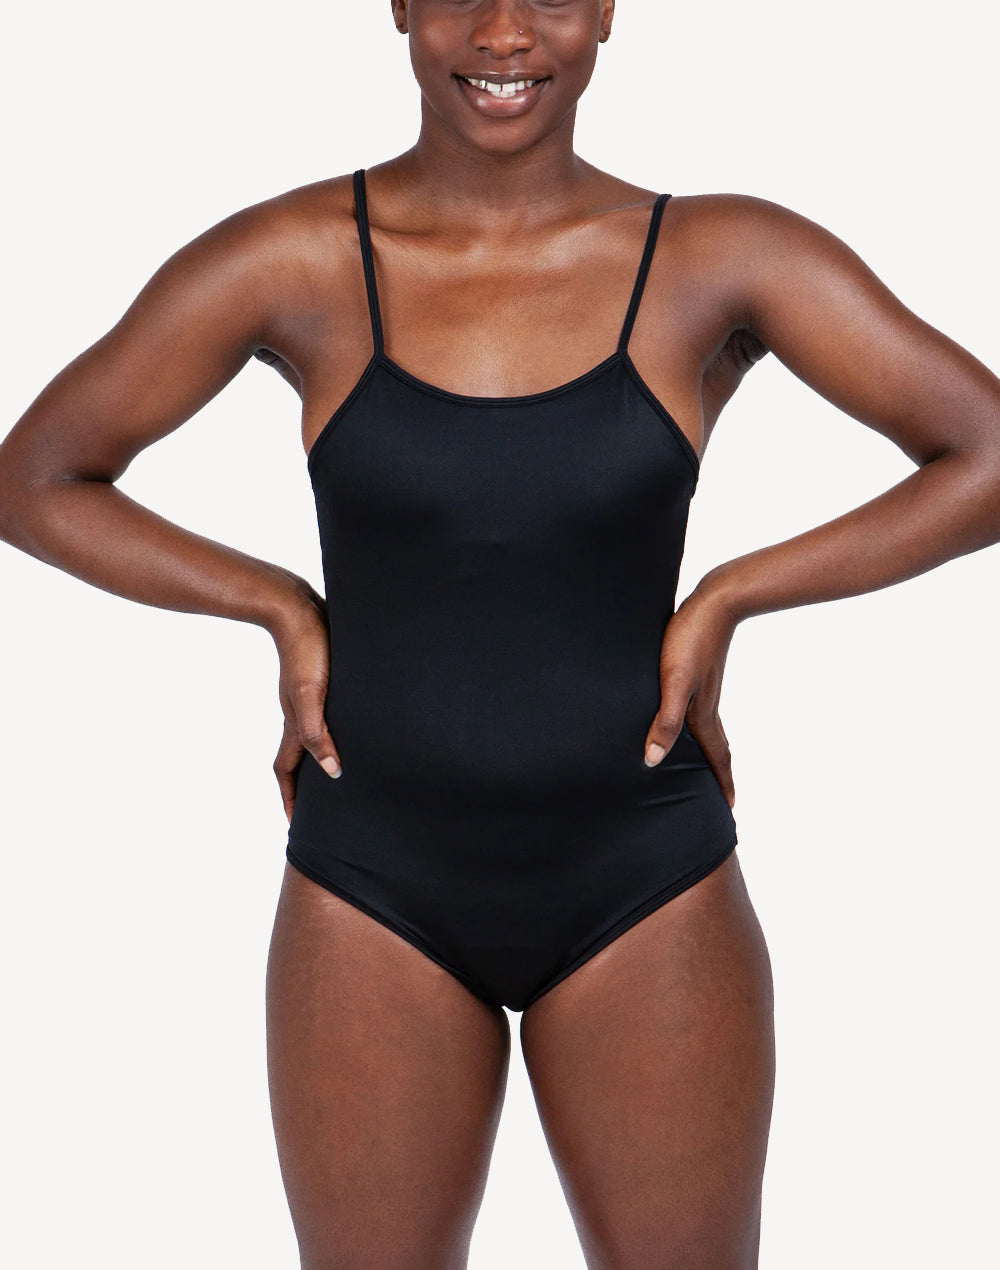 feitycom Period Swimwear - Menstrual Swimwear - Black One Piece